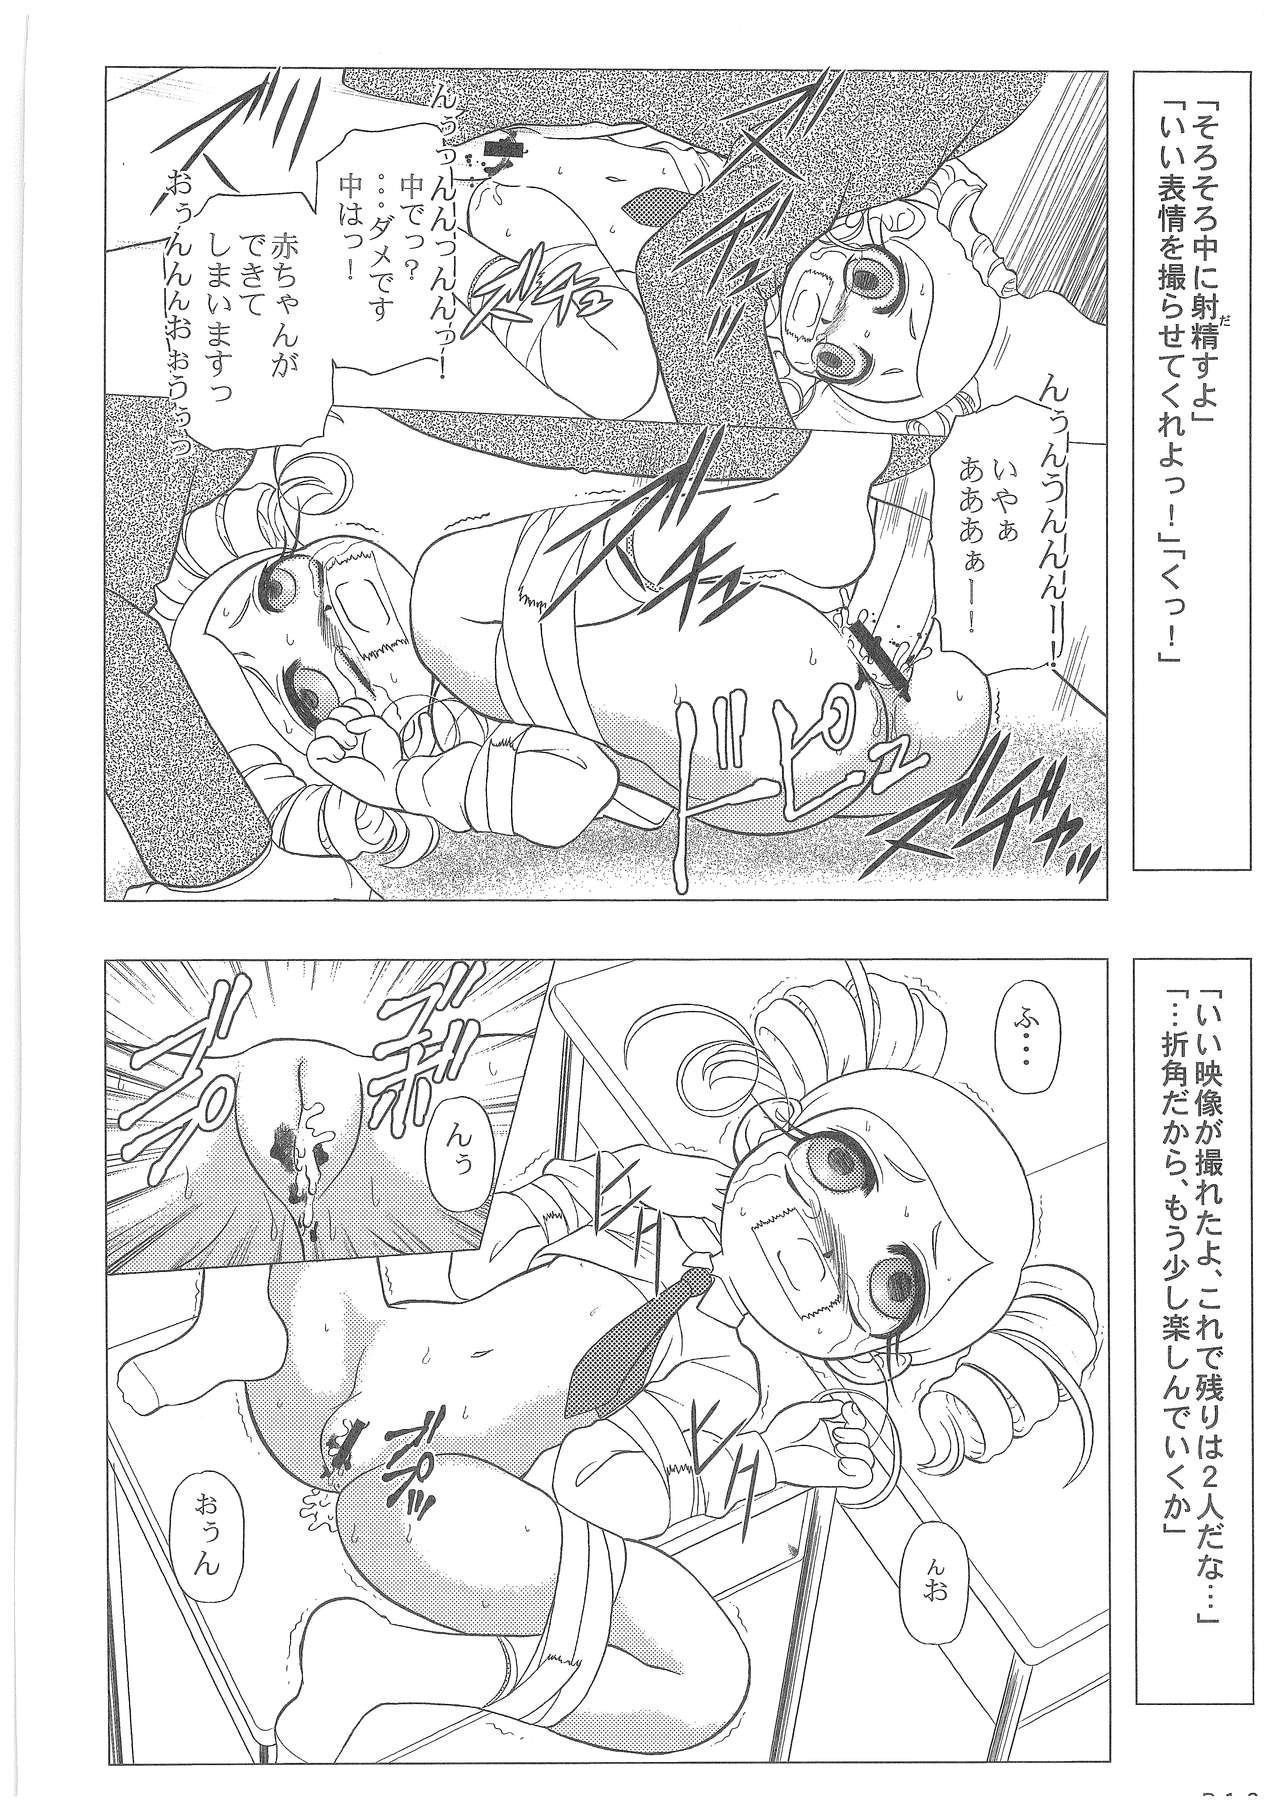 Power Puff Girls Z 001 hentai manga picture 8